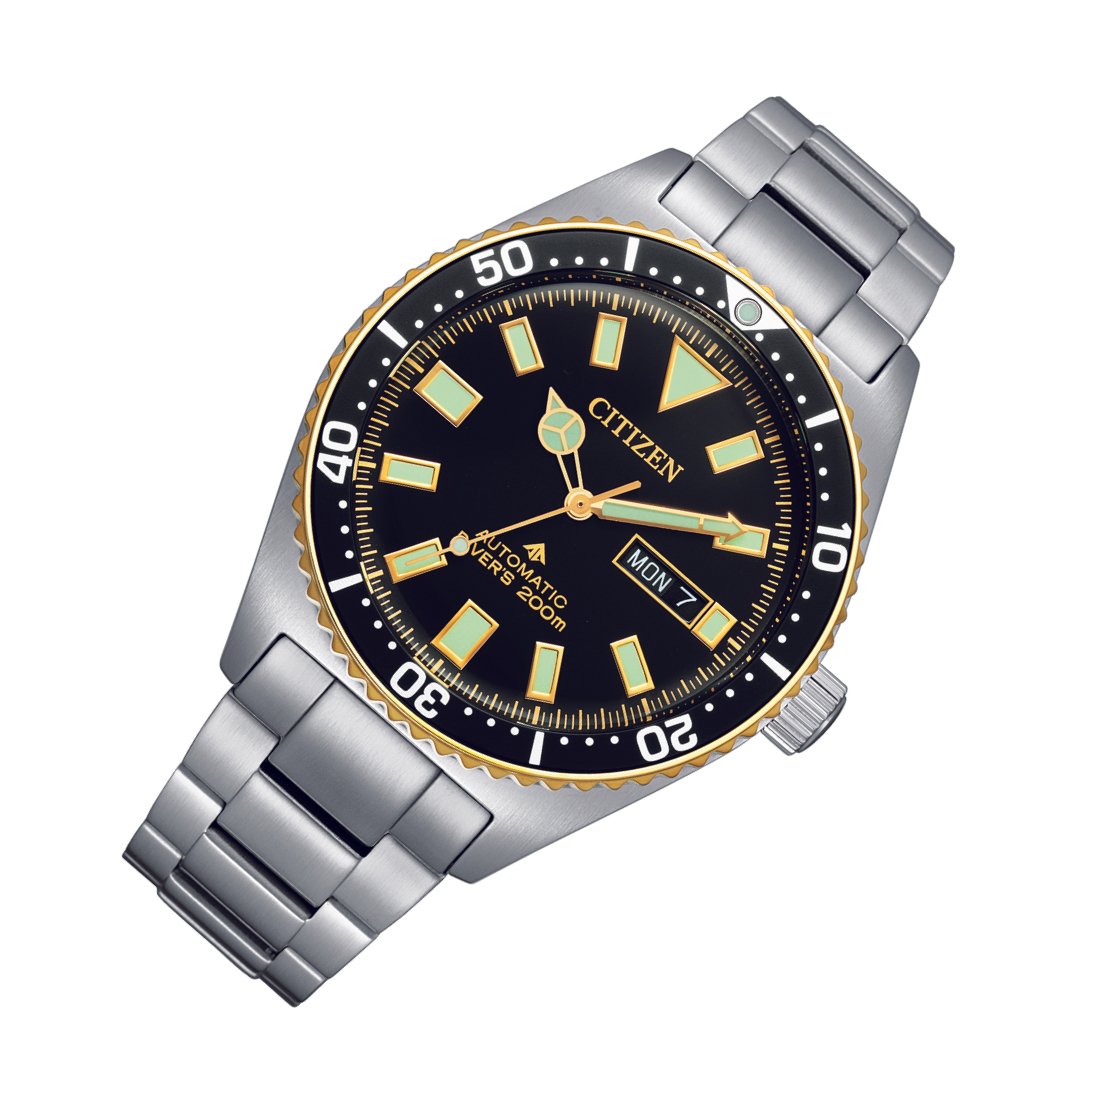 Citizen Promaster NY0125-83E Automatic Divers 200m Watch (PRE-ORDER) -Citizen